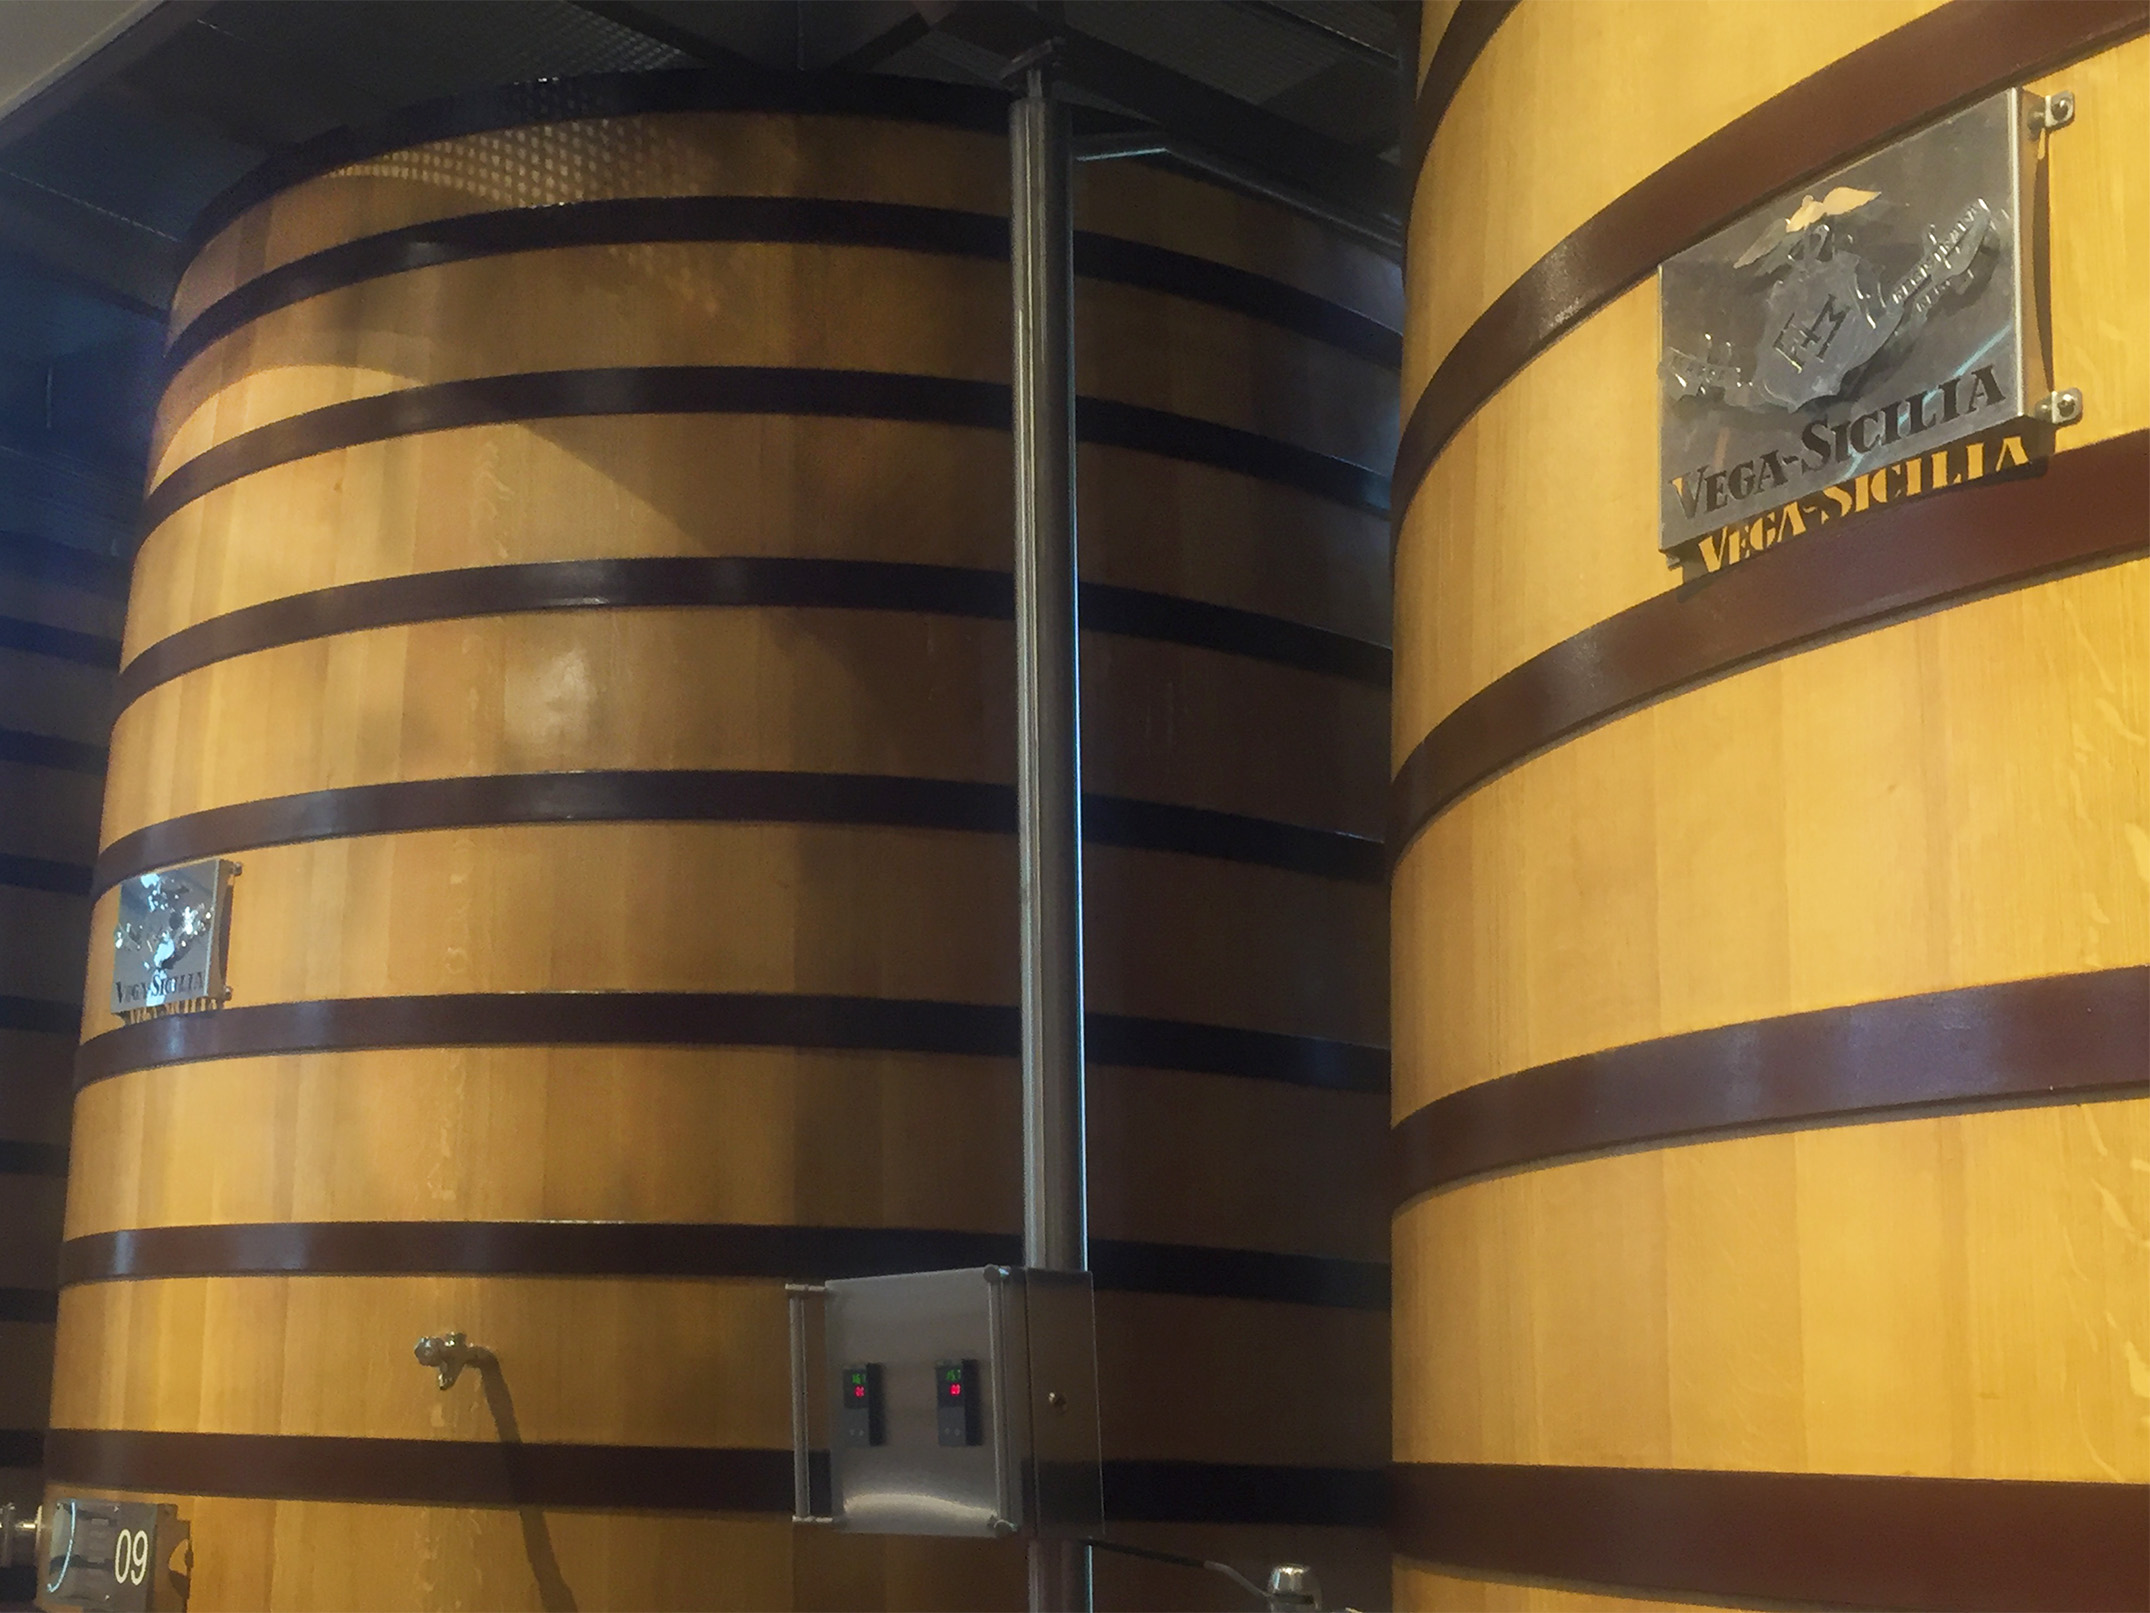 Vega Sicilia, the most renowned winery in Ribera del Duero | CÚRATE Trips